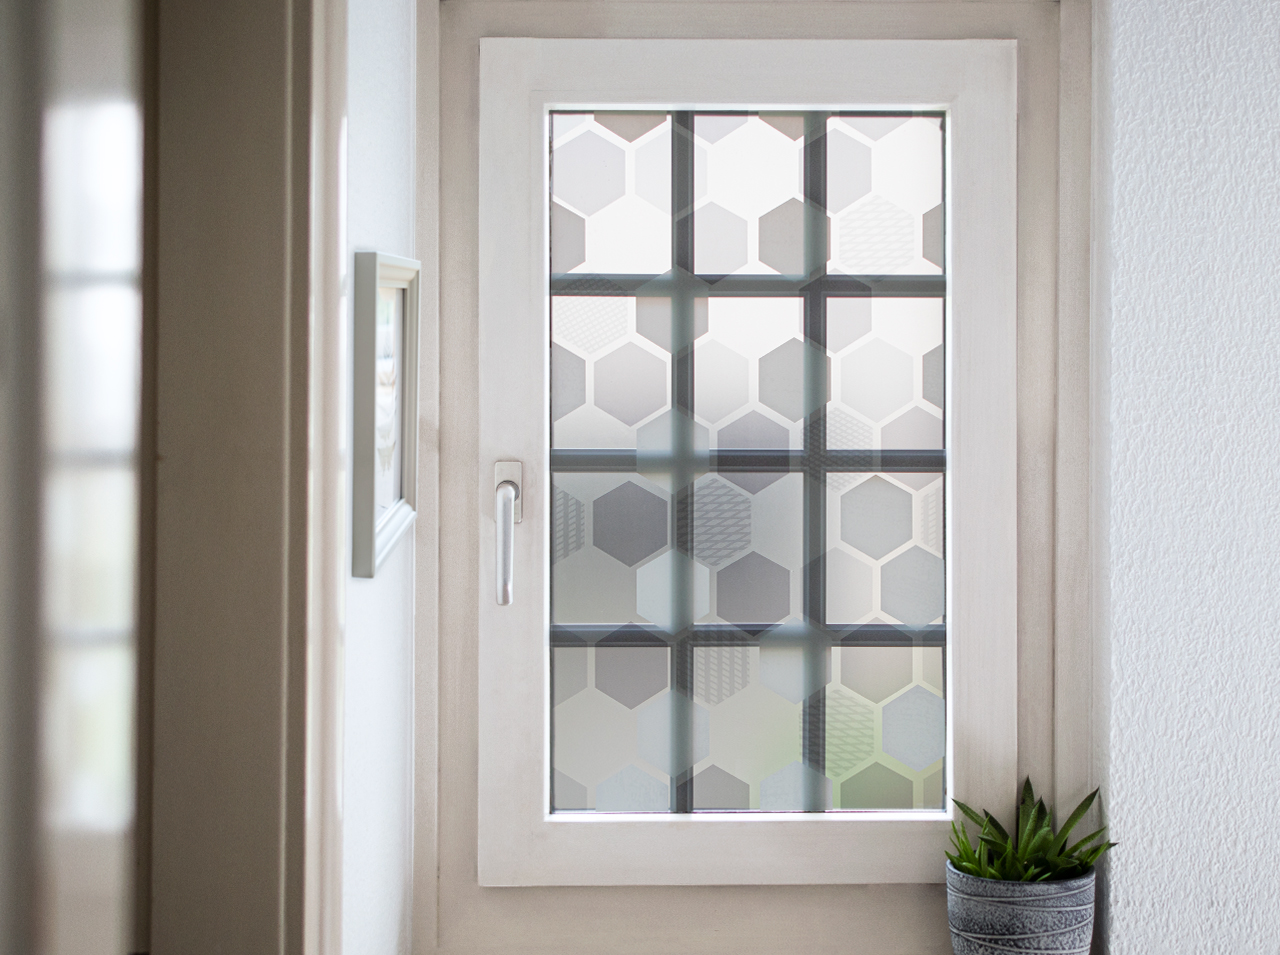 Okno oklejone nieprzezroczystą folią okienną z wzorem plastra miodu w kolorach białym, szarym i miętowym.